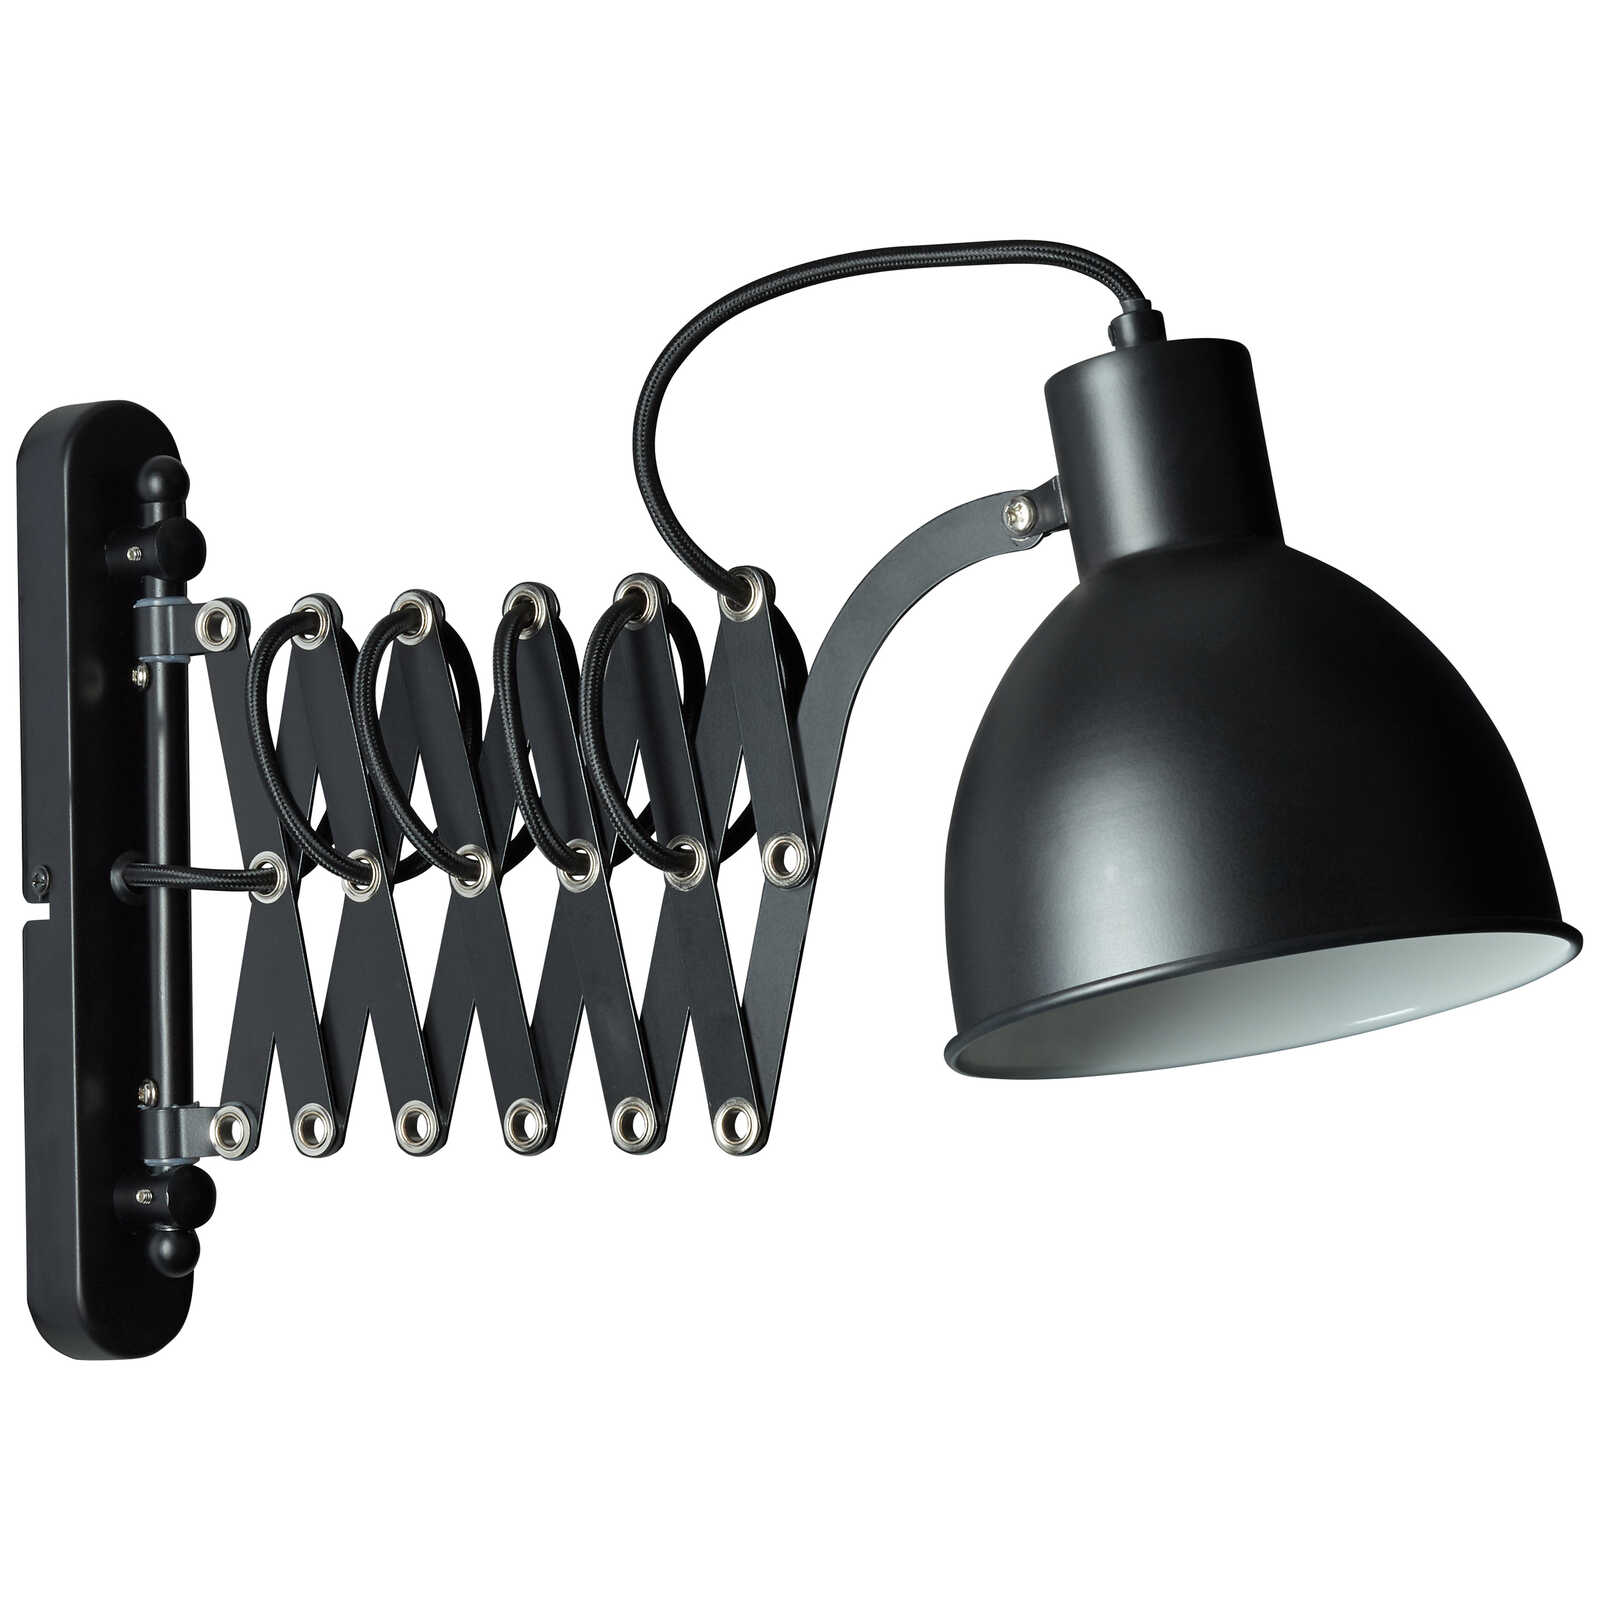             Metalen wandlamp - Miran - Zwart
        